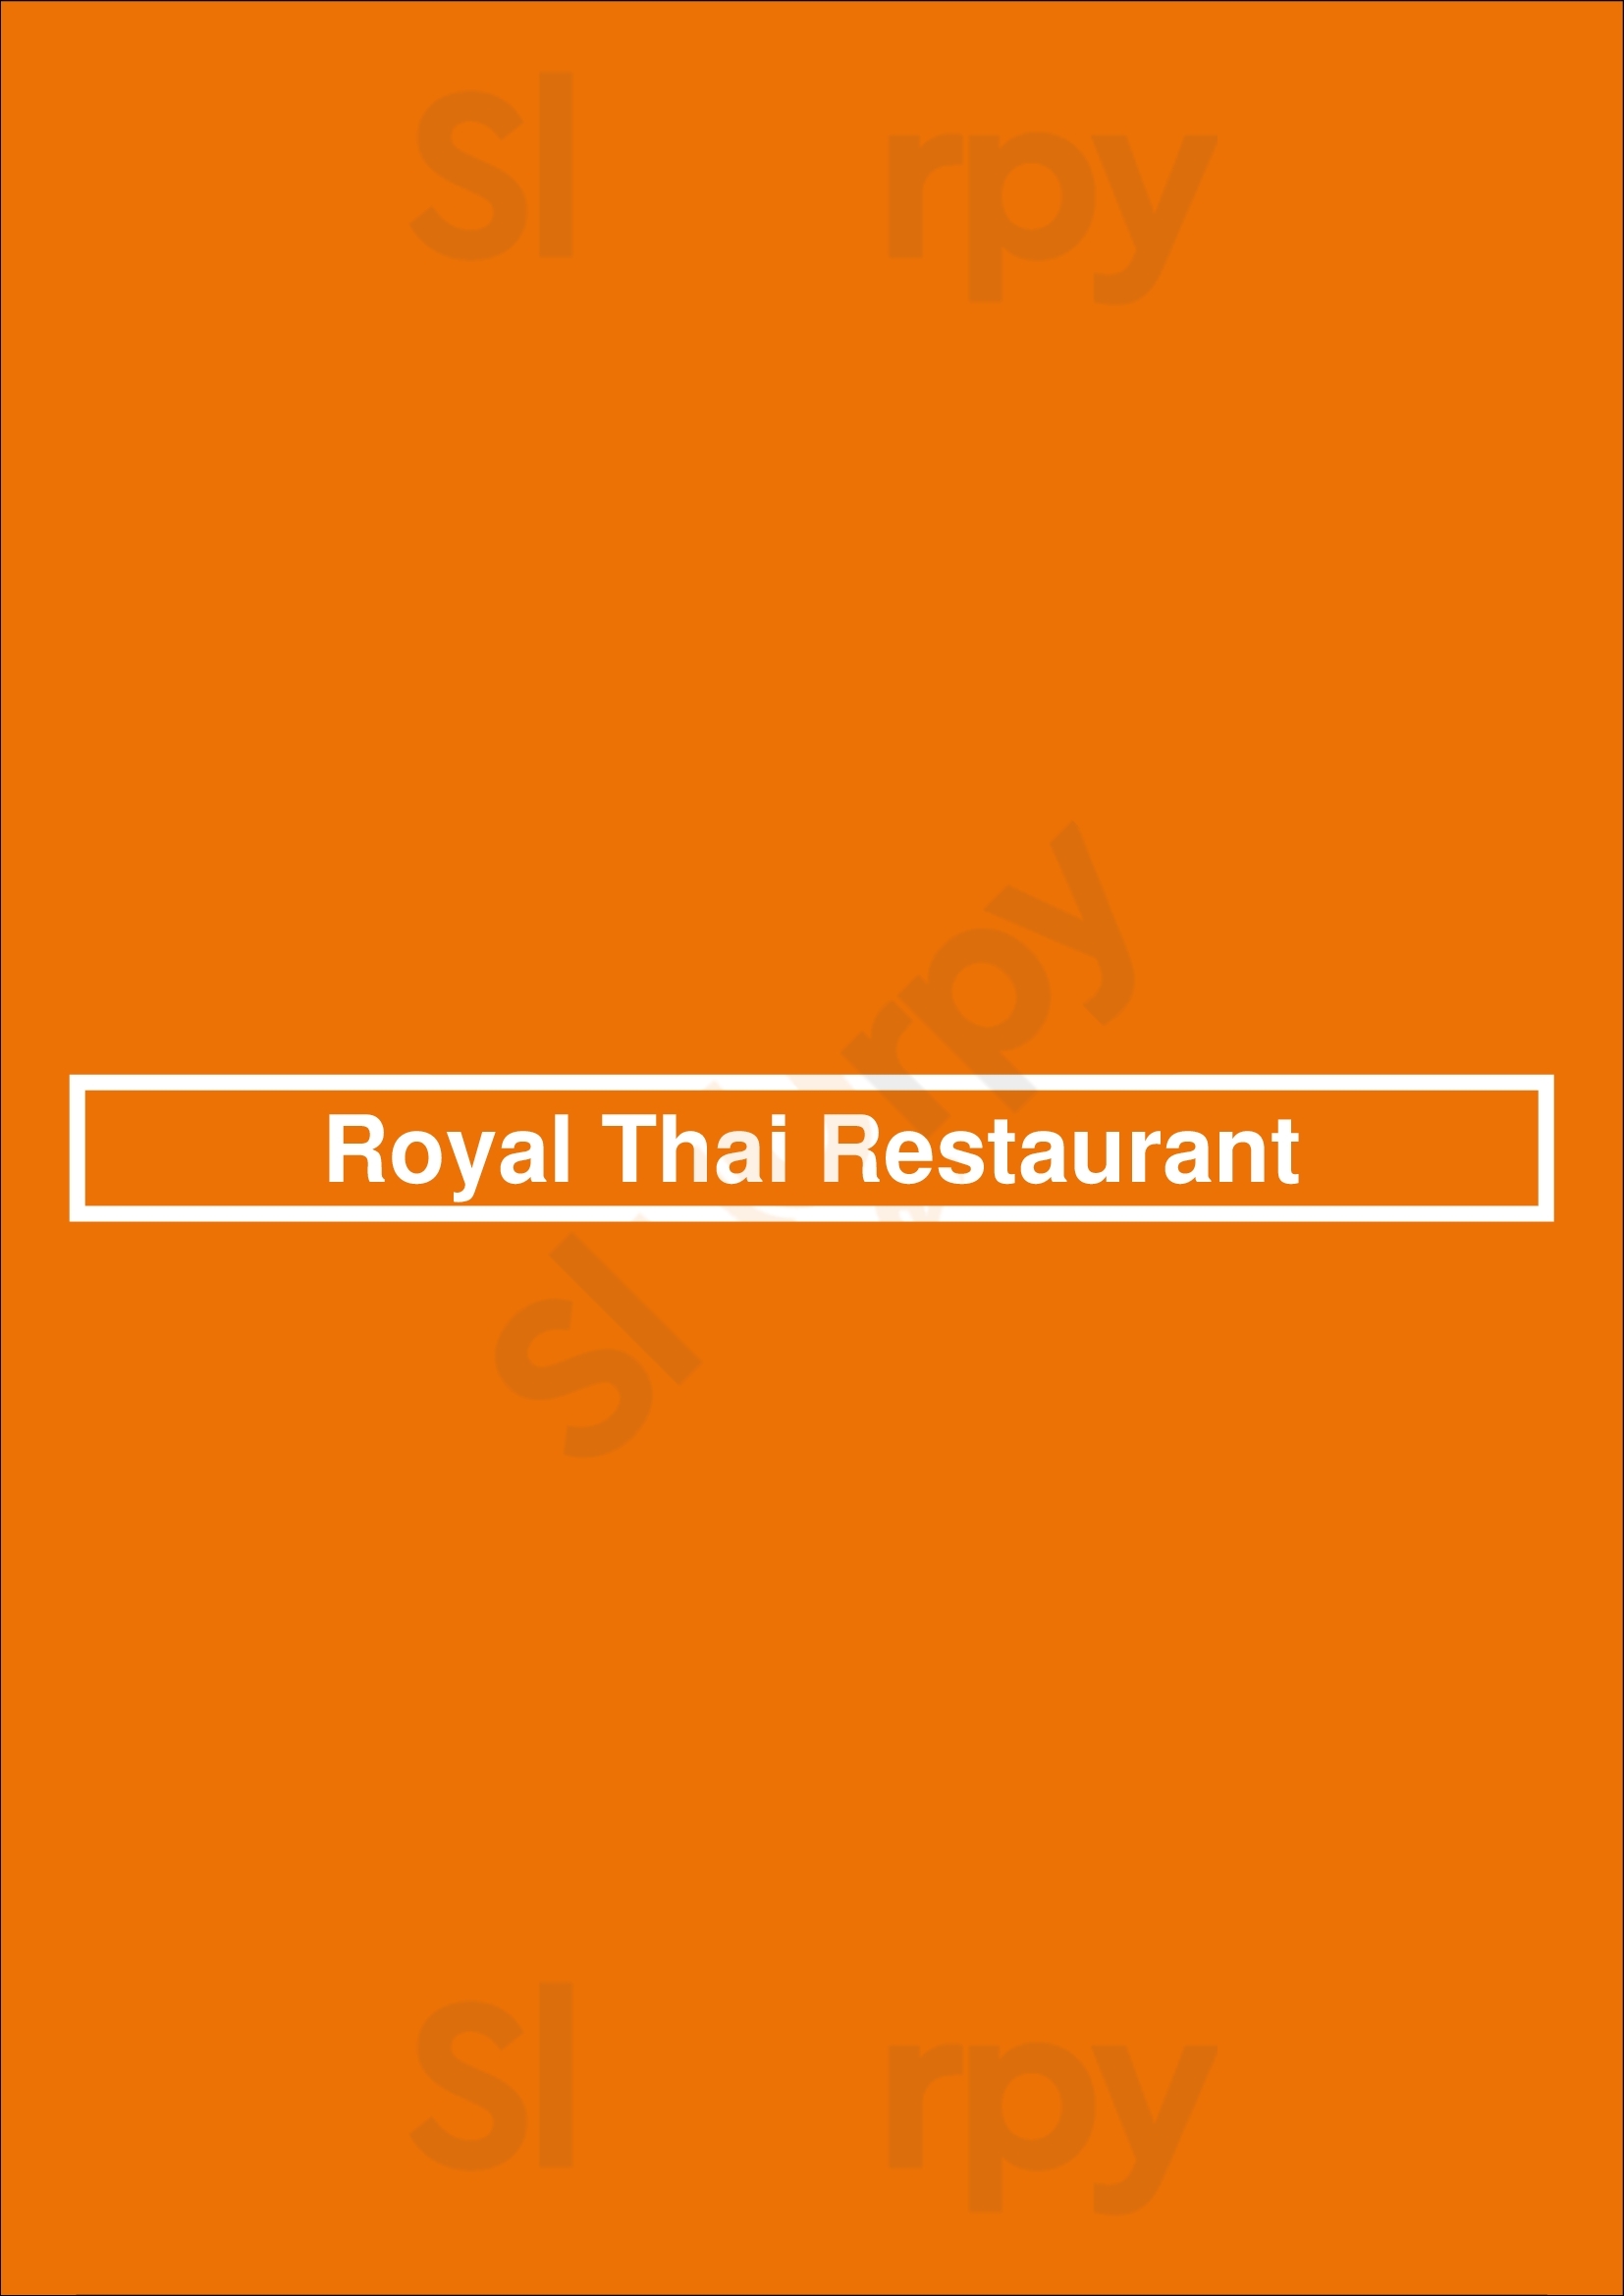 Royal Thai Restaurant San Rafael Menu - 1